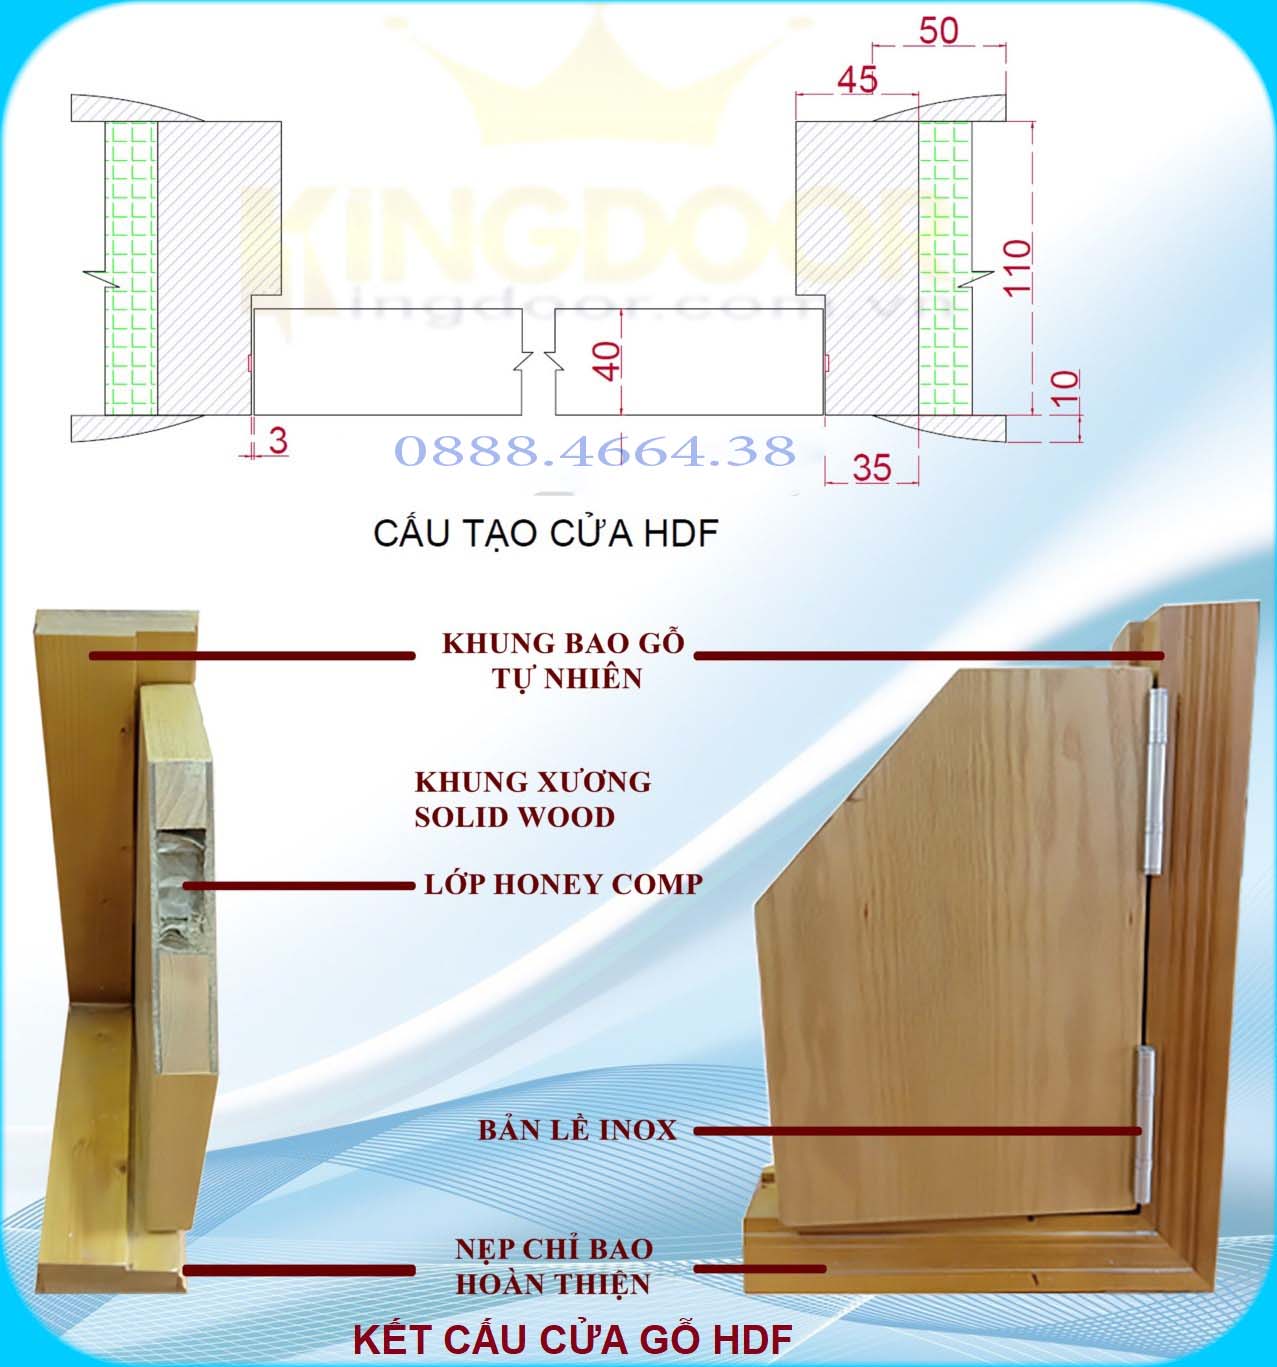 Nội, ngoại thất: Cửa gỗ HDF tại Quận 4 - Mẫu cửa phòng đẹp, giá rẻ Cau-tao-cua-go-cong-nghiep-HDF